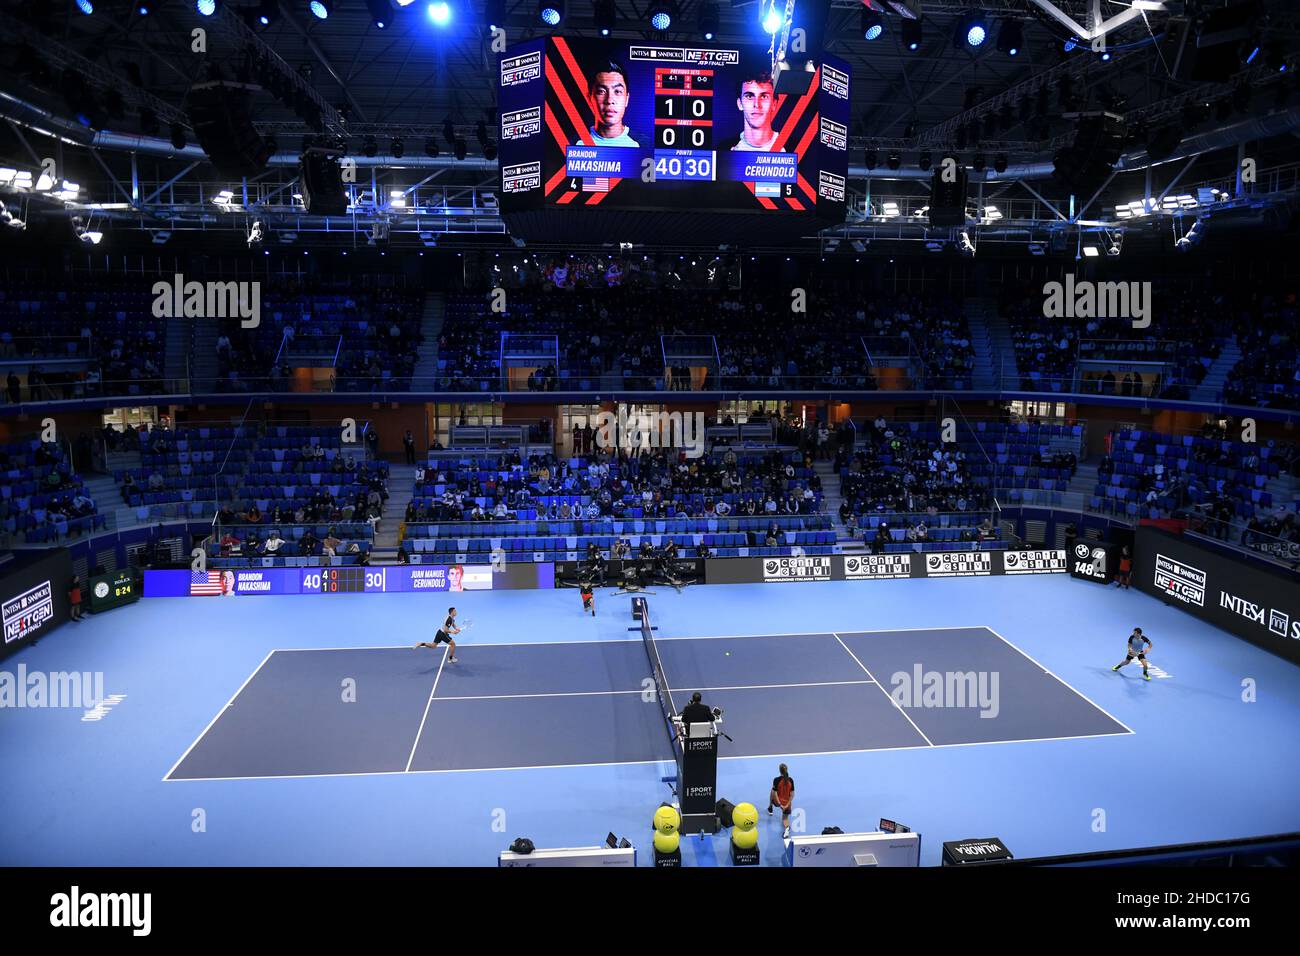 Tennisturnier des Next Gen ATP Finals auf dem Indoor-Tennisplatz der Allianz Cloud in Mailand 2021. Stockfoto